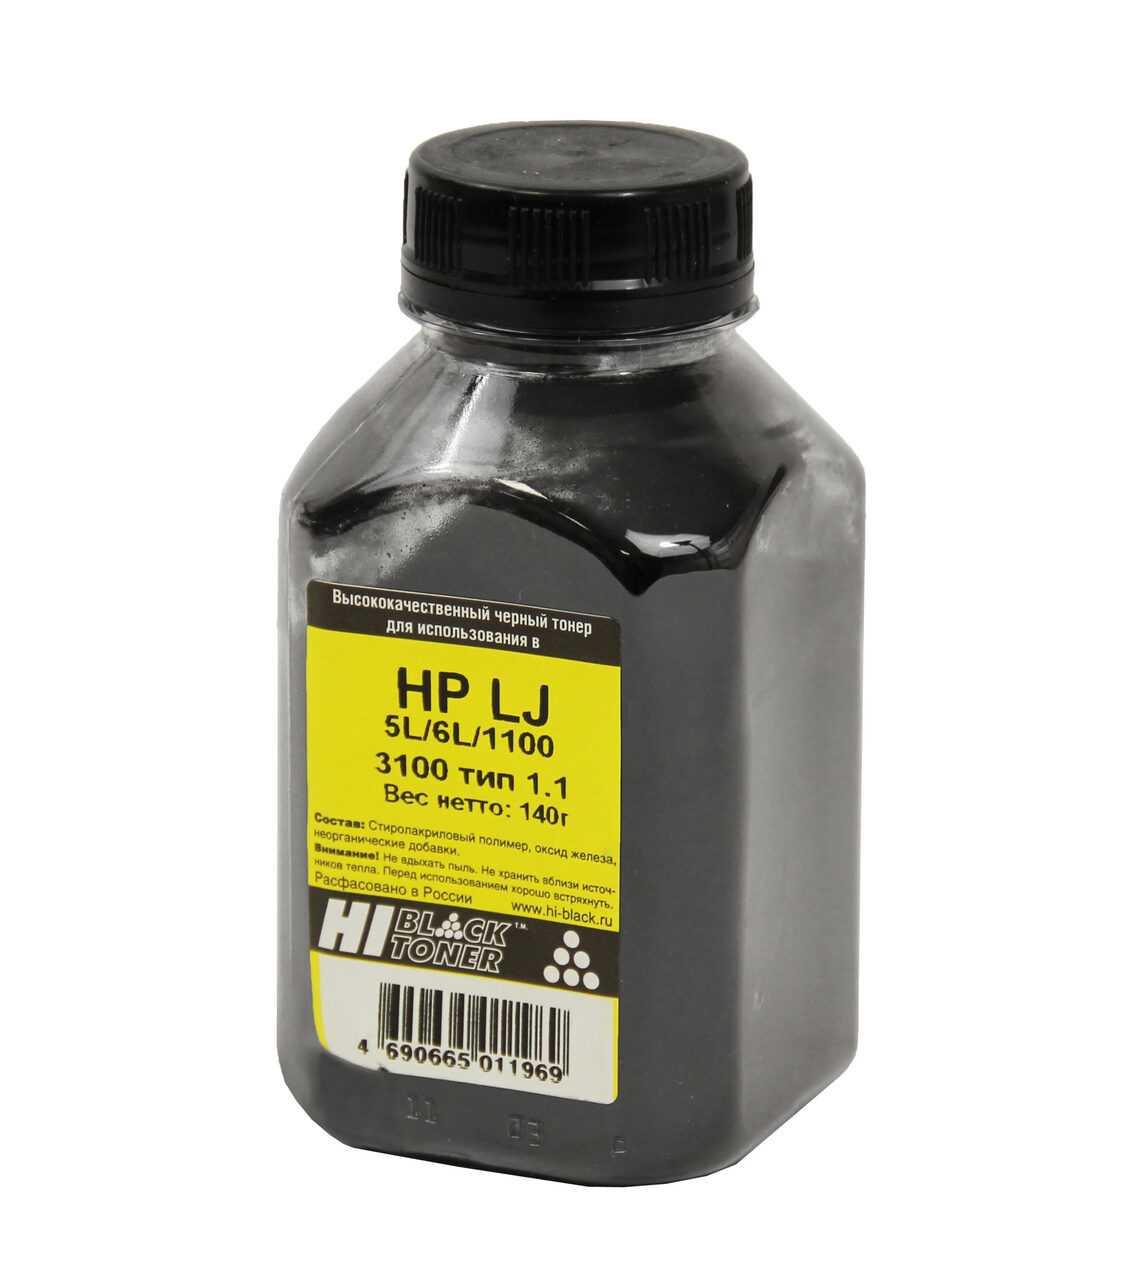 Тонер Hi-Black для HP LJ 5L/6L/1100/3100, Тип 1.1, Bk, 140 г,банка